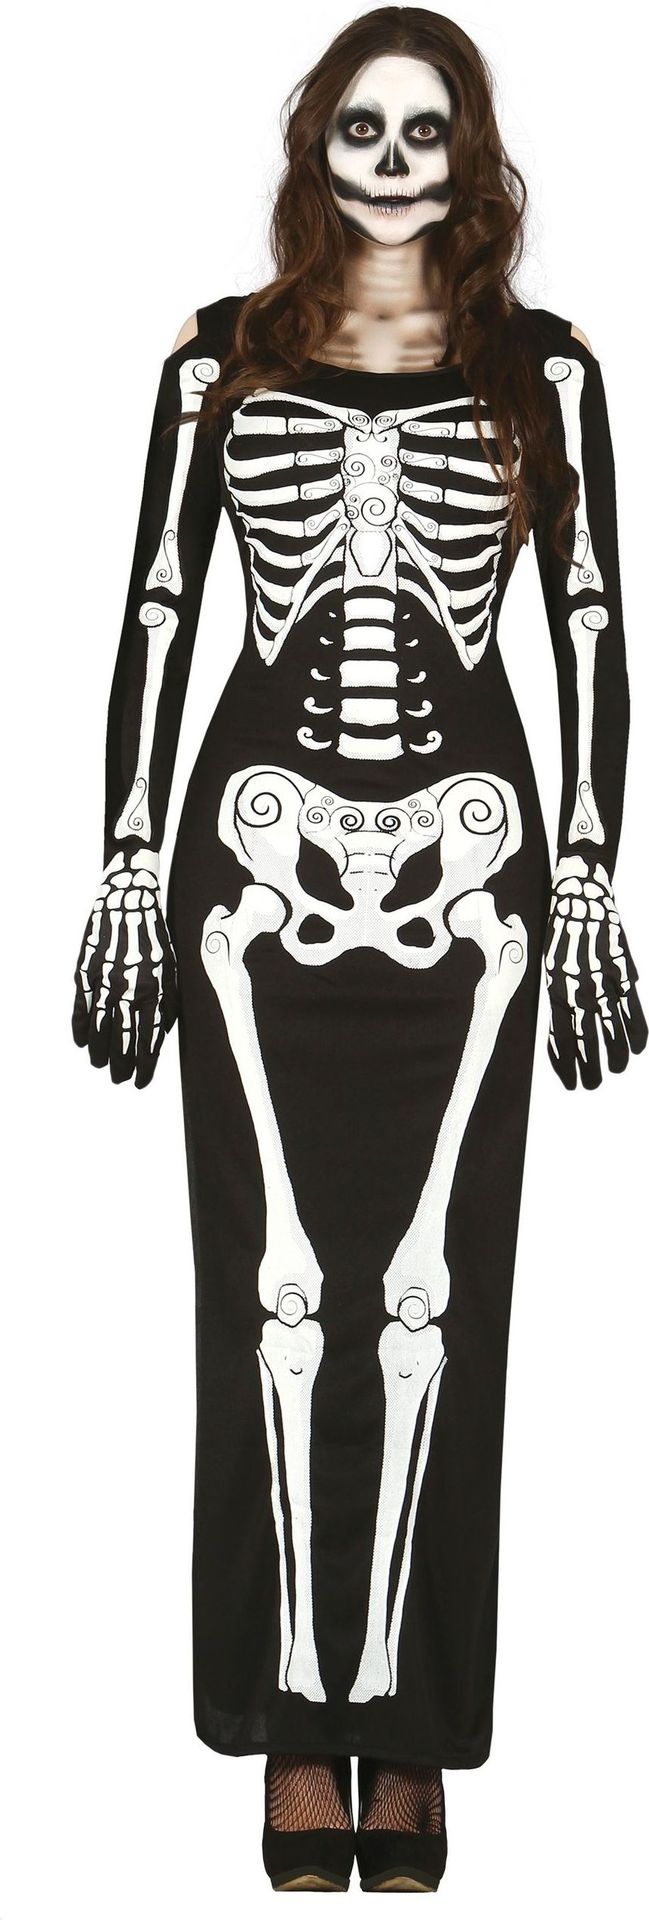 Lang skelet jurkje